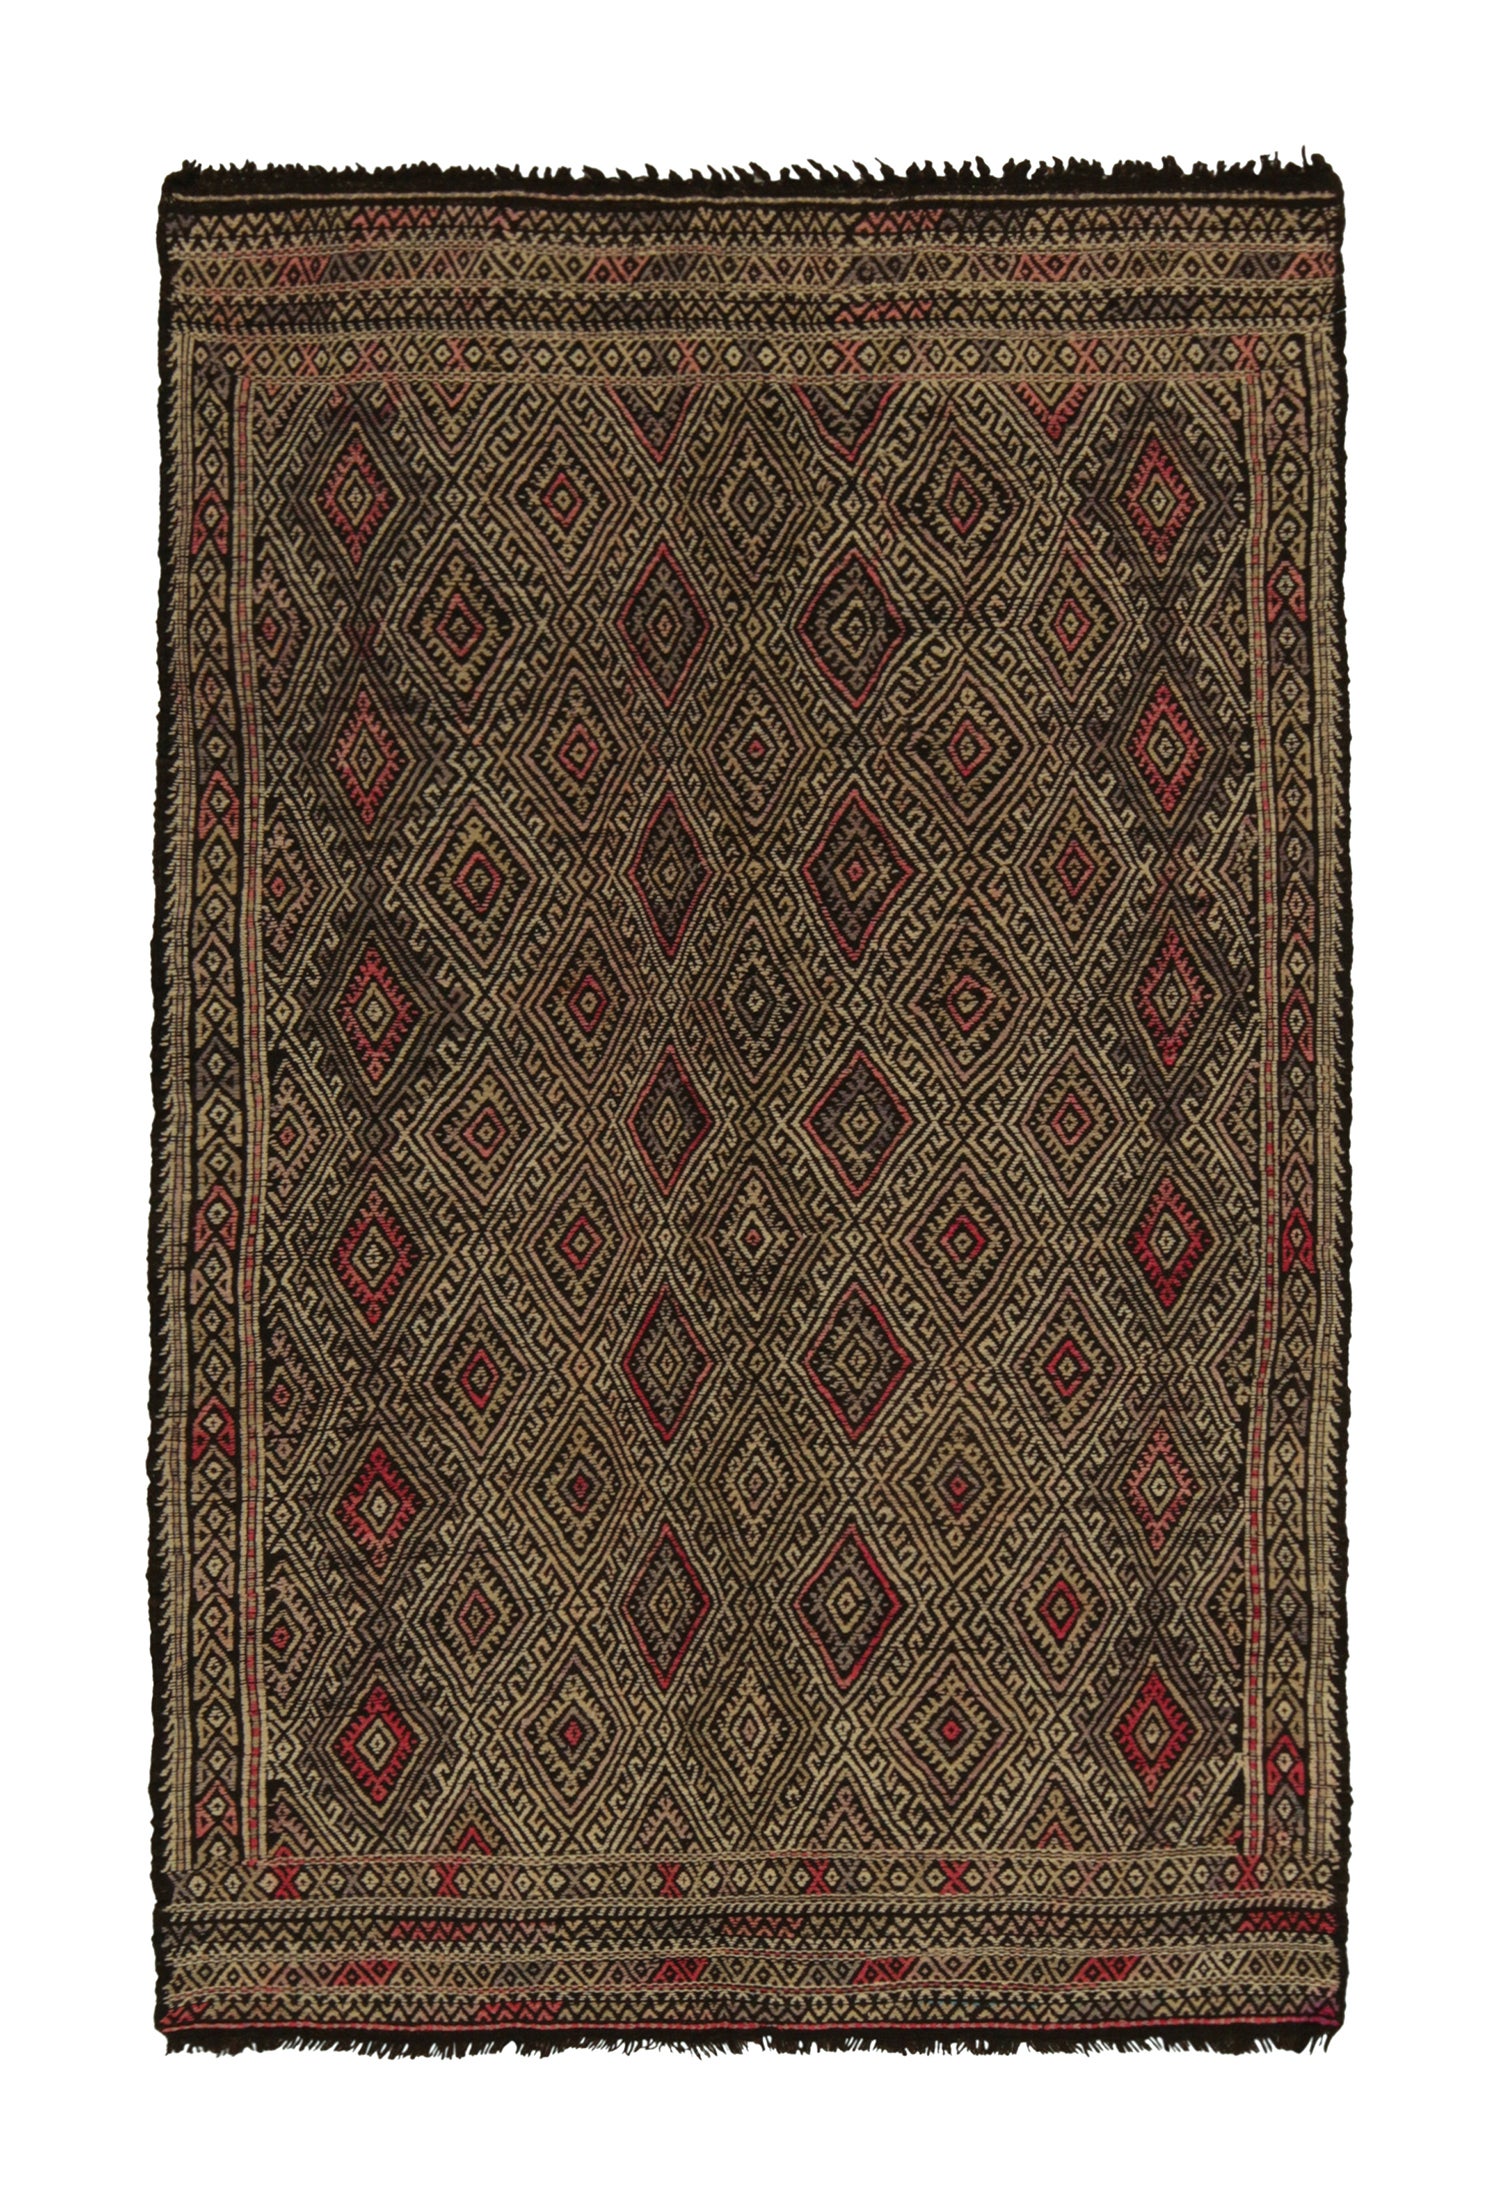 Vintage Chaput Tribal Kilim Beige-Brown and Red Diamond Pattern by Rug & Kilim